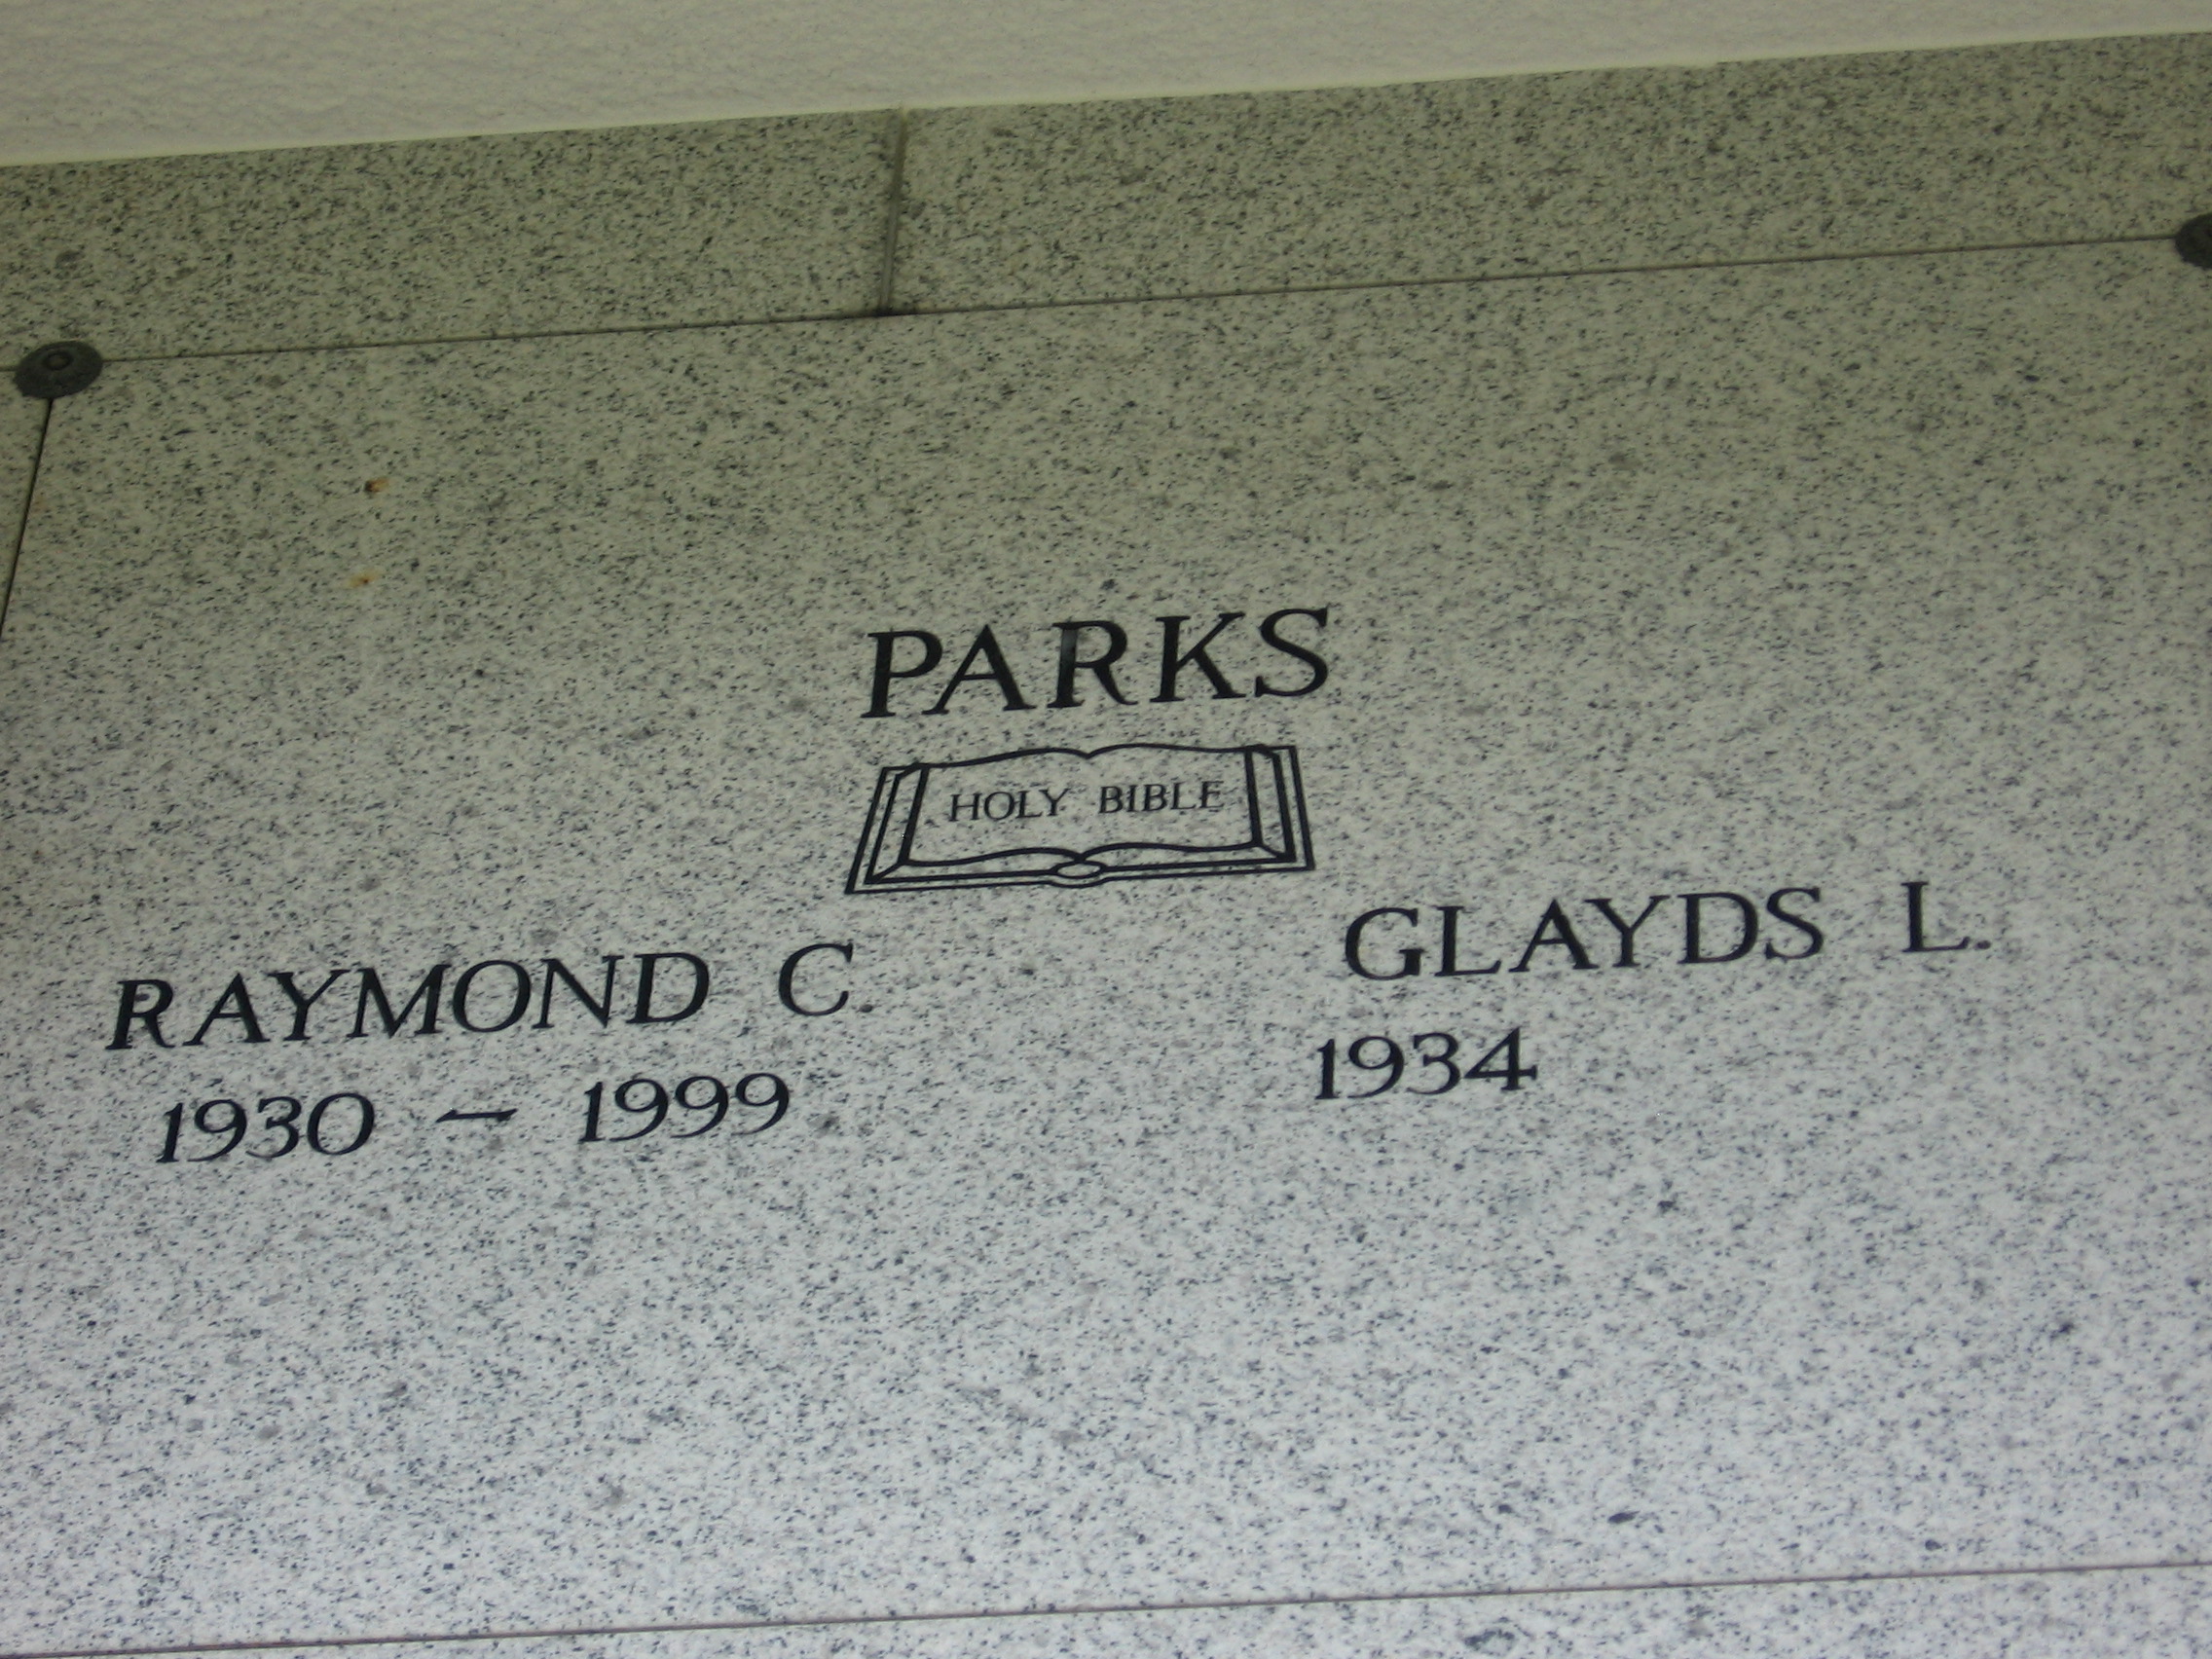 Glayds L Parks